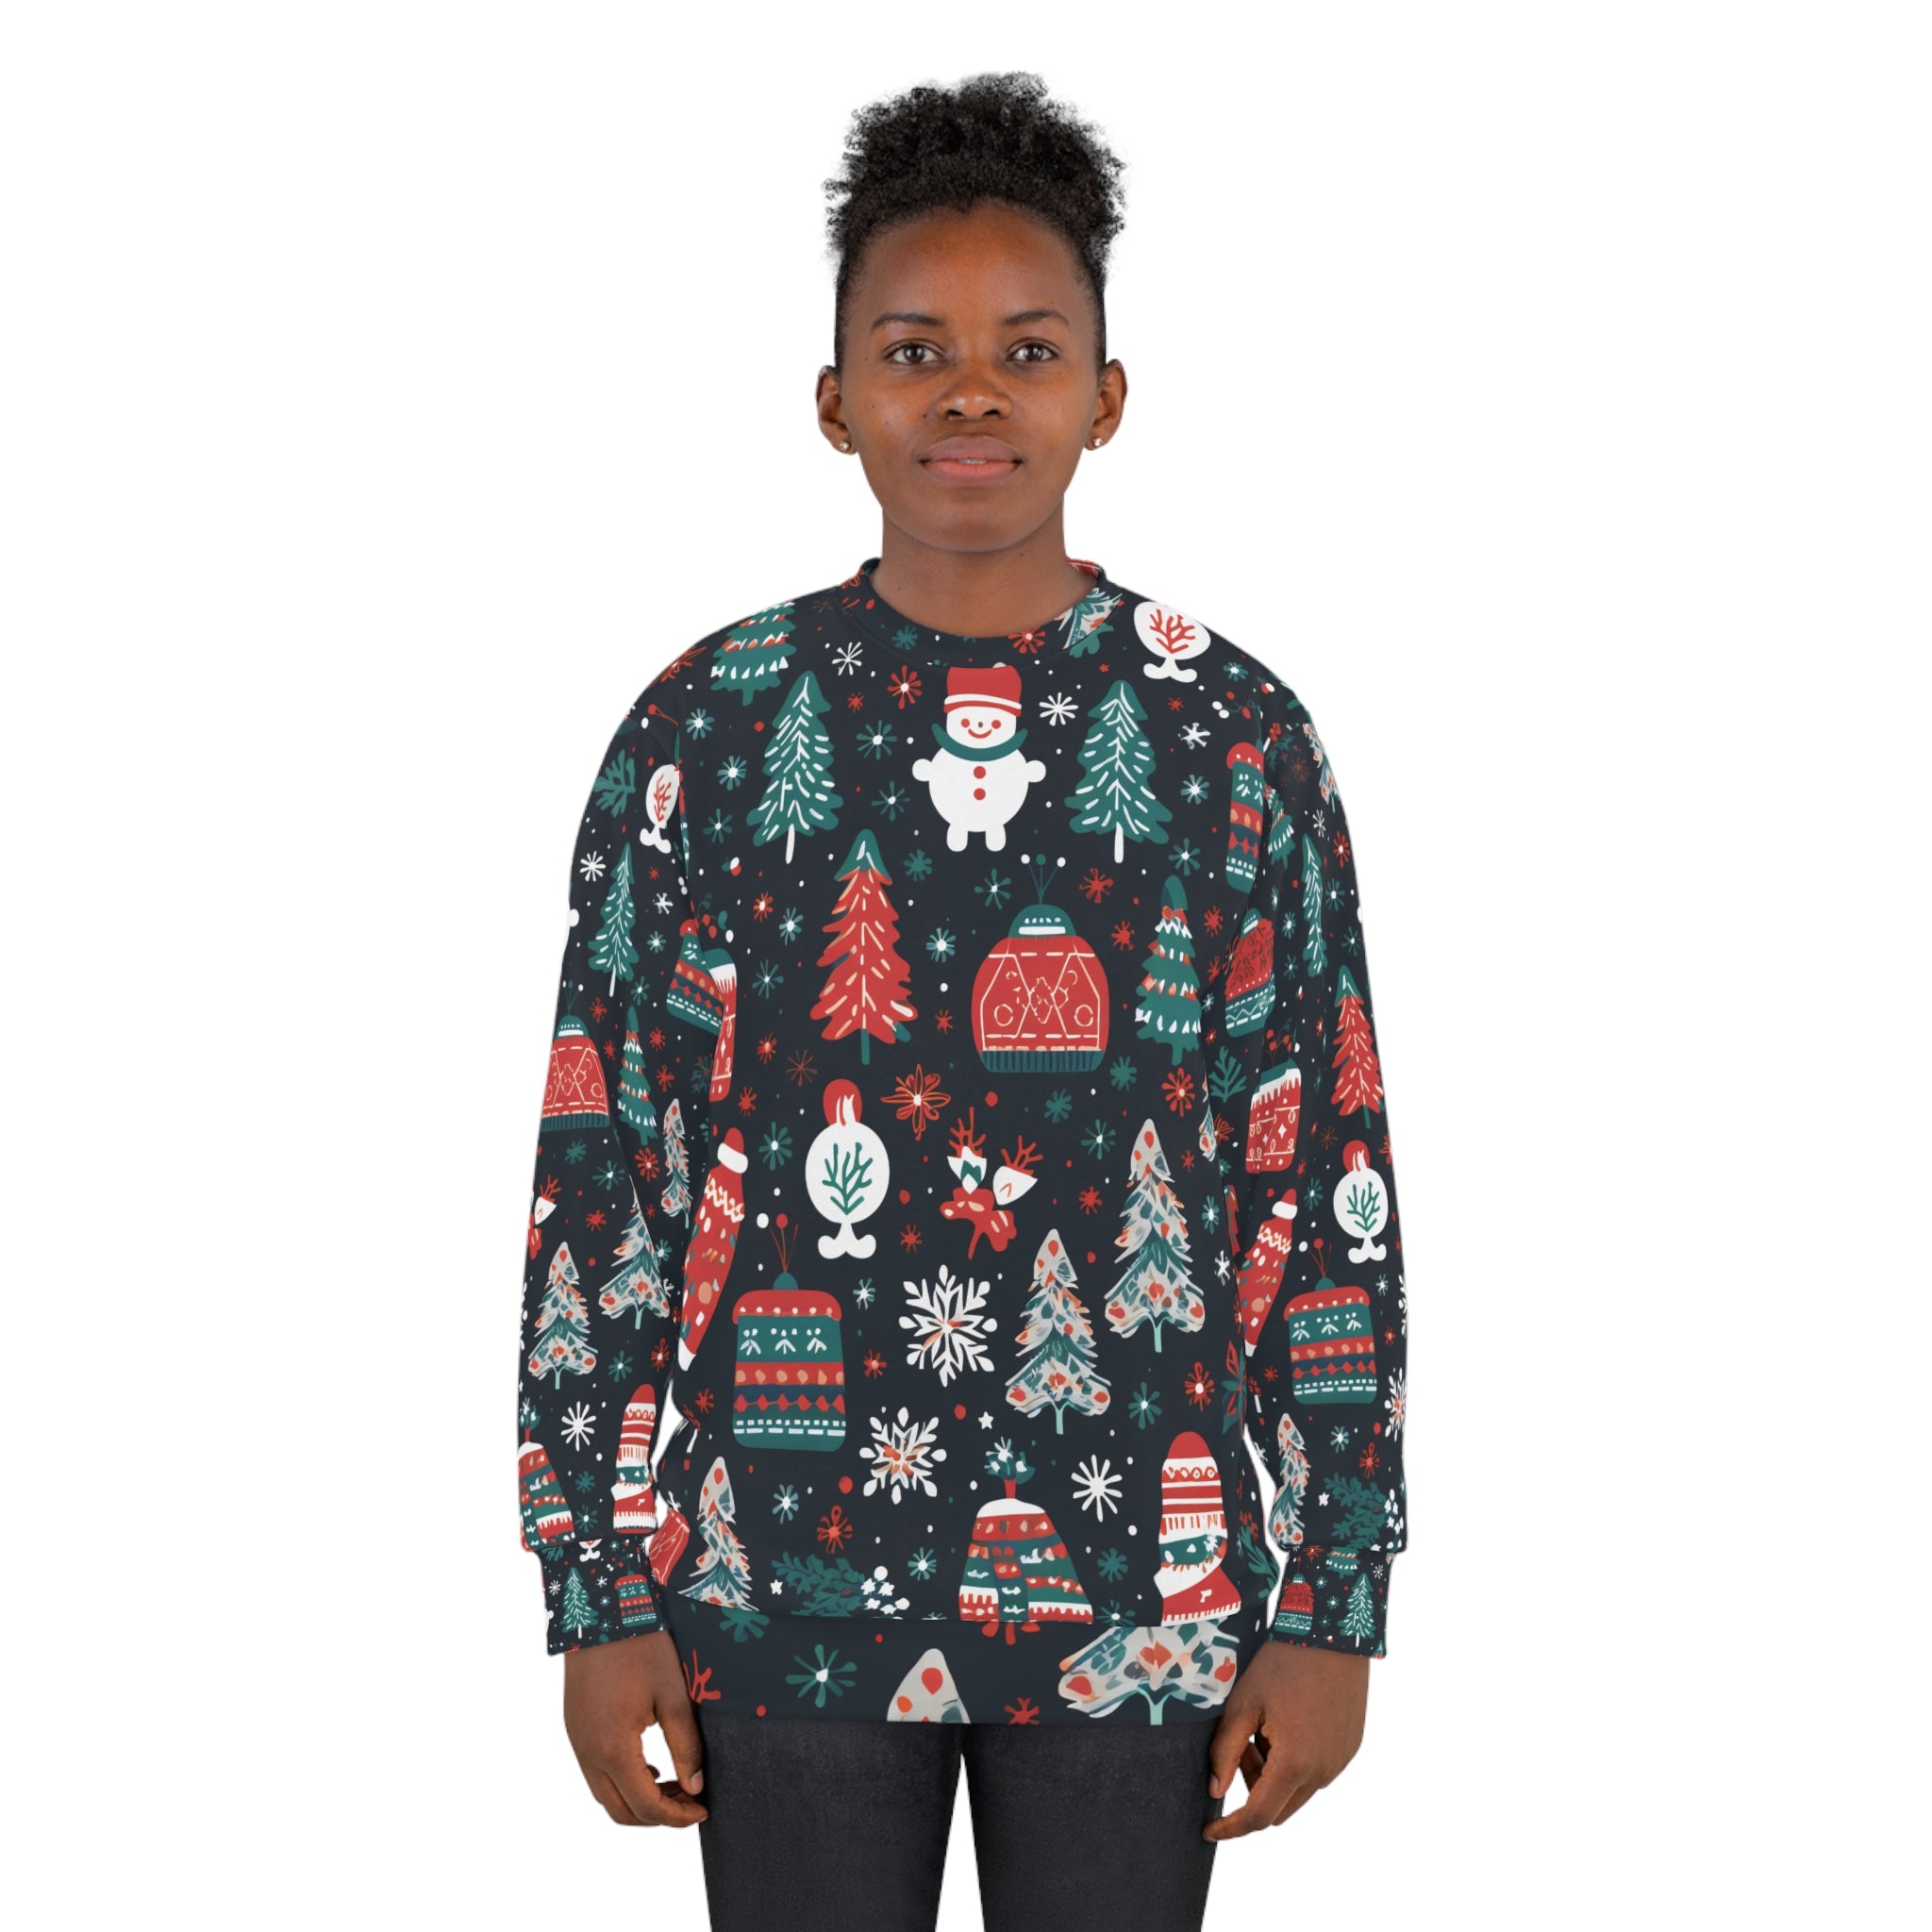 Piney Parade - Christmas Sweater